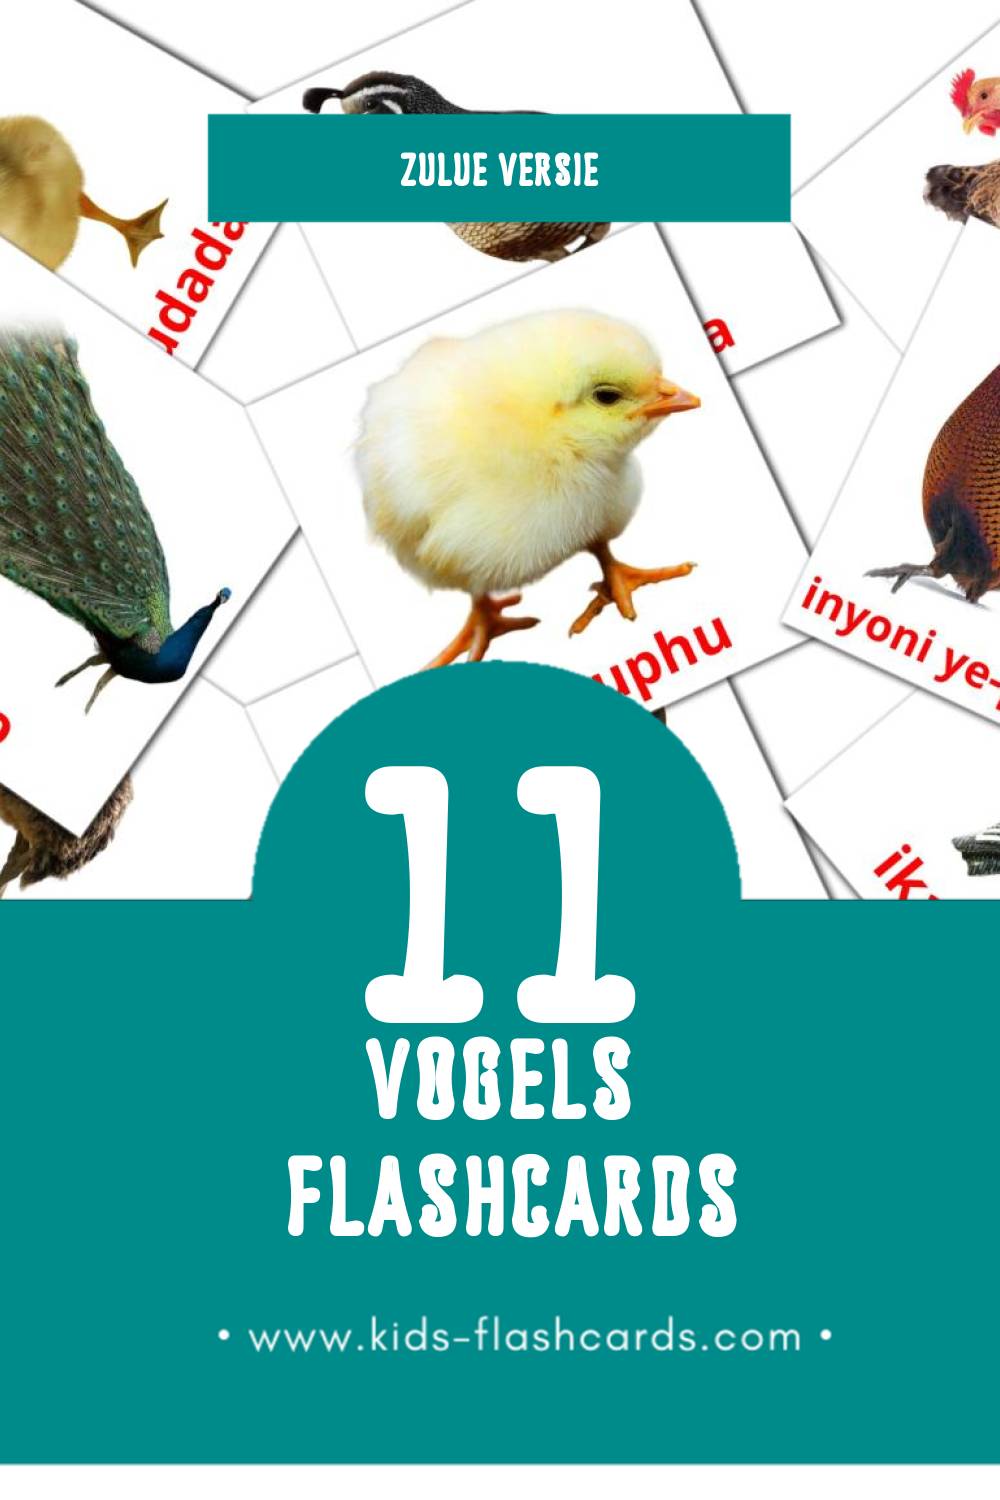 Visuele Inyoni Flashcards voor Kleuters (11 kaarten in het Zulu)